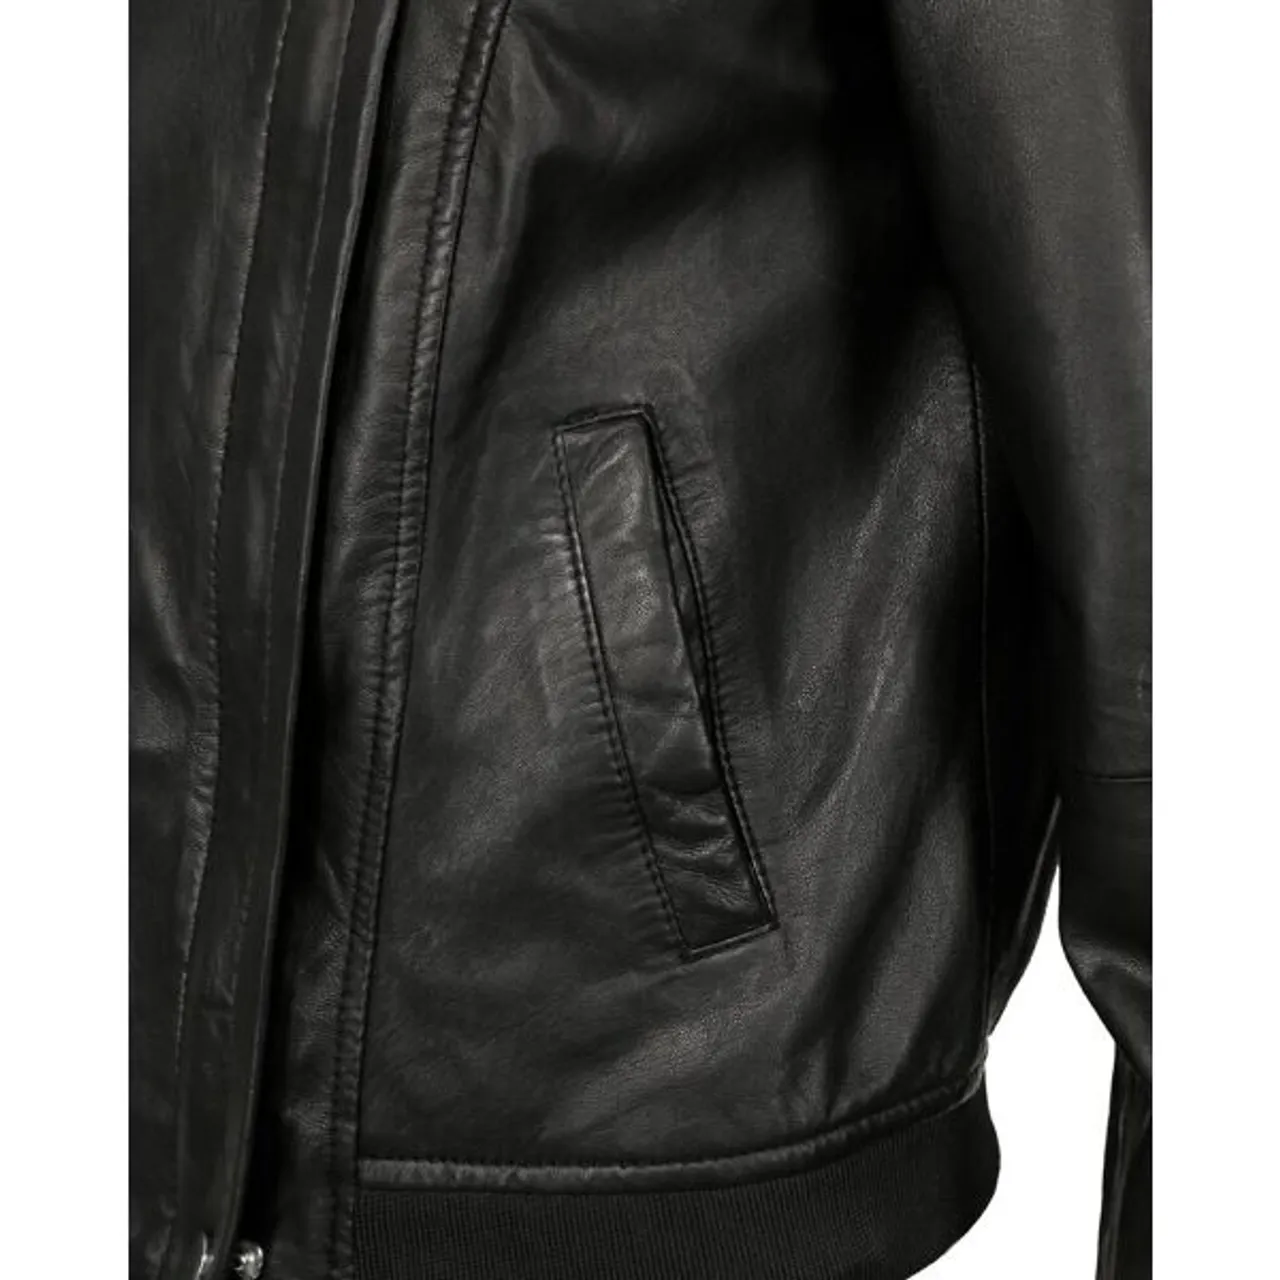 Bikerjacke JCC "31019225_1" Gr. XL, schwarz (black) Damen Jacken Übergangsjacken